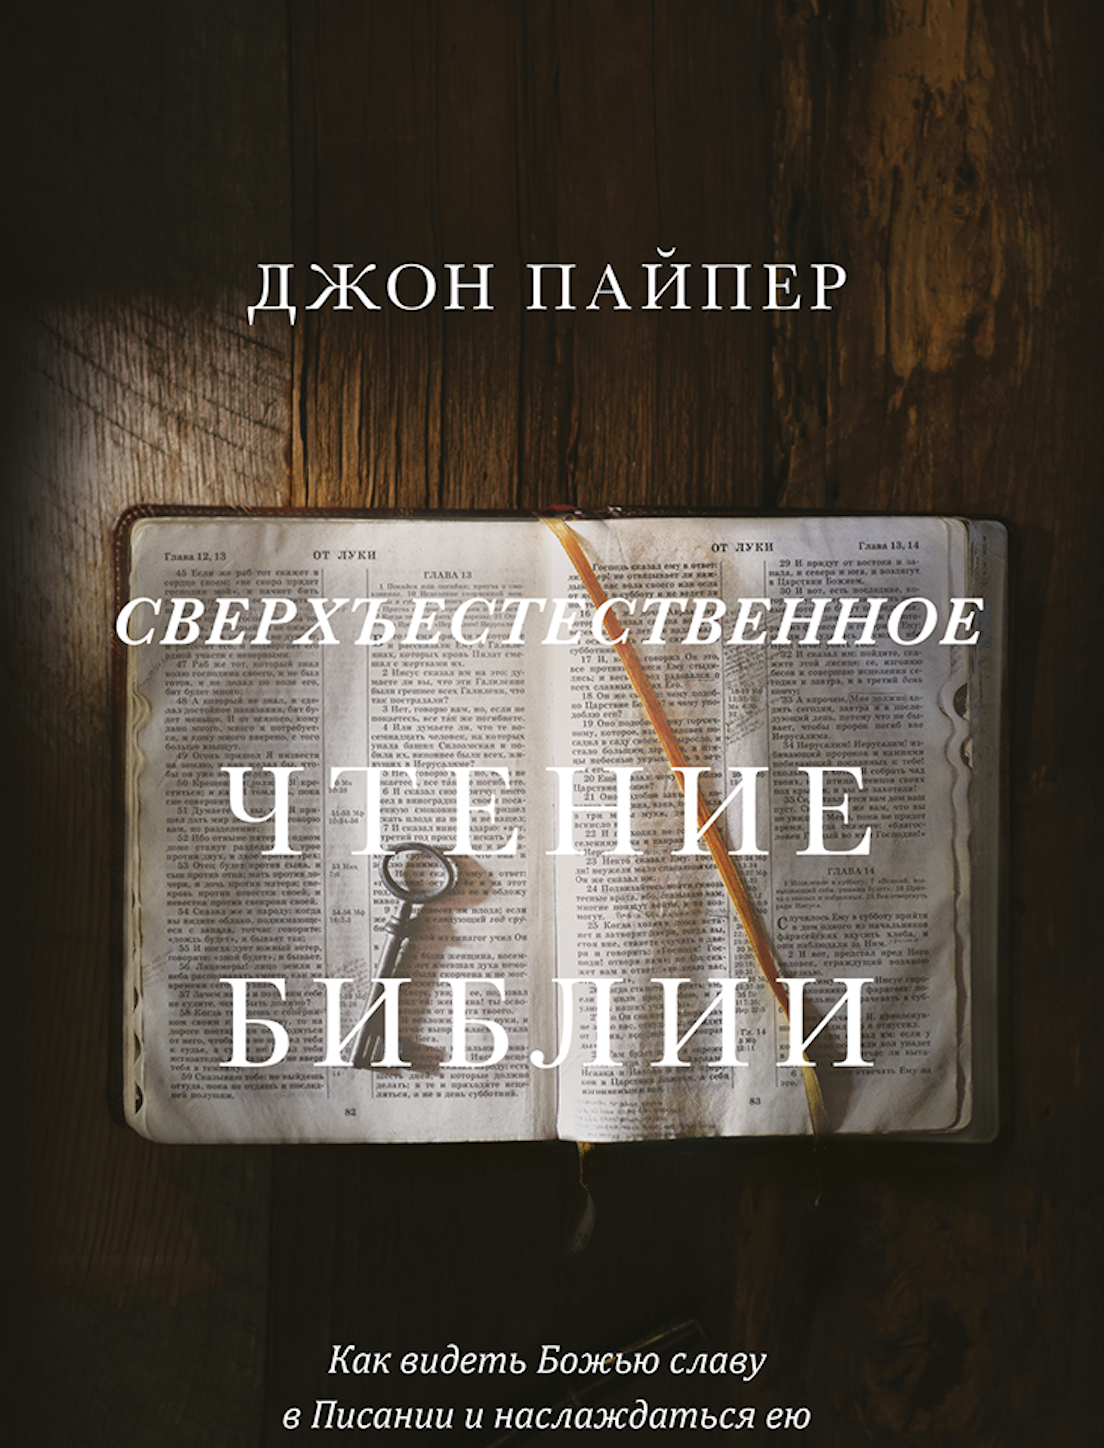 Сверхъестественное чтение Библии  - Джон Пайпер